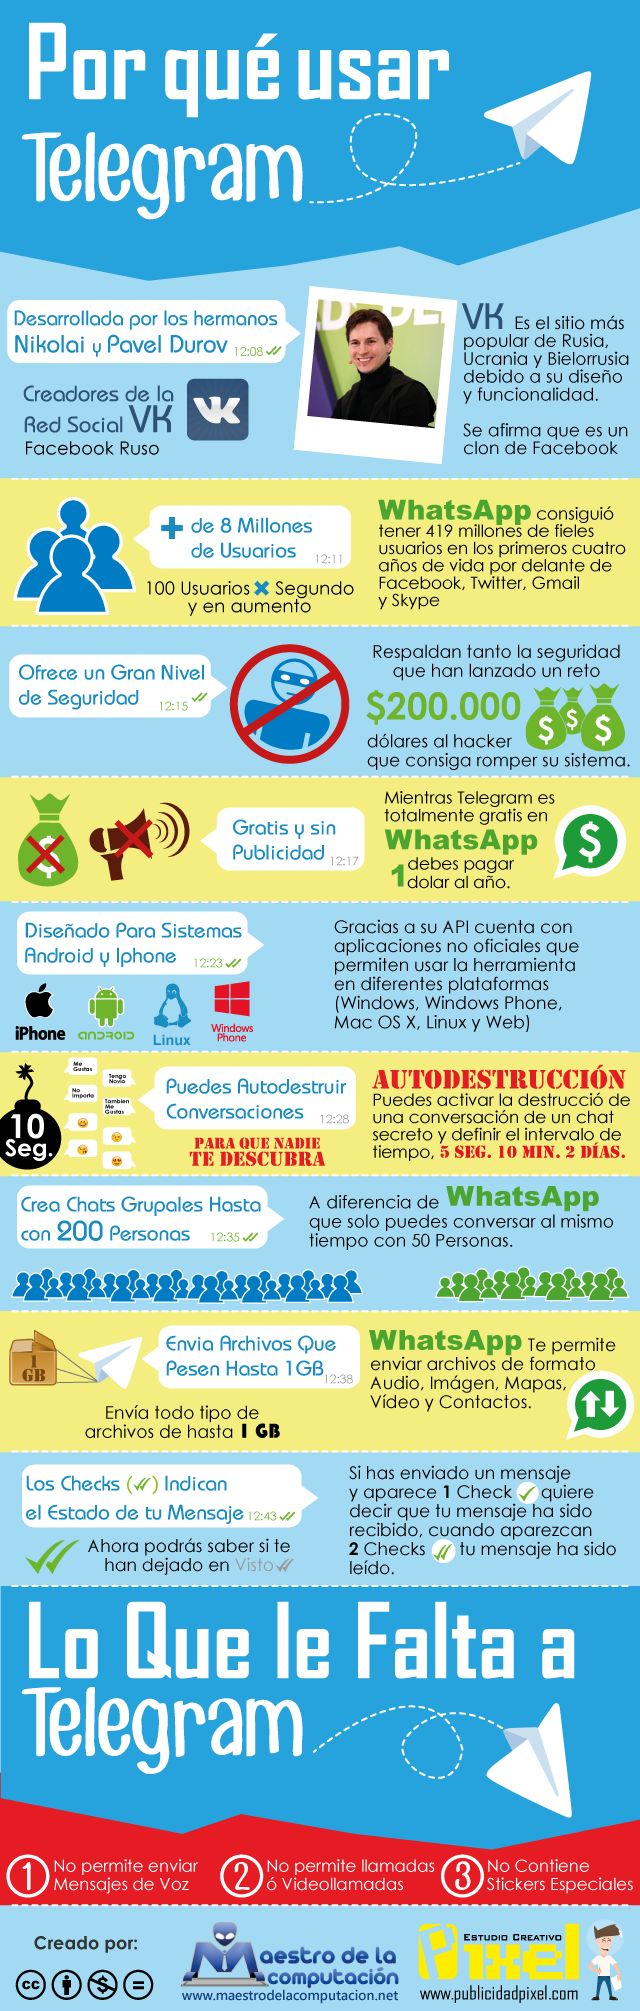 Motivos para usar Telegram comparándolo con WhatsApp (infografía)